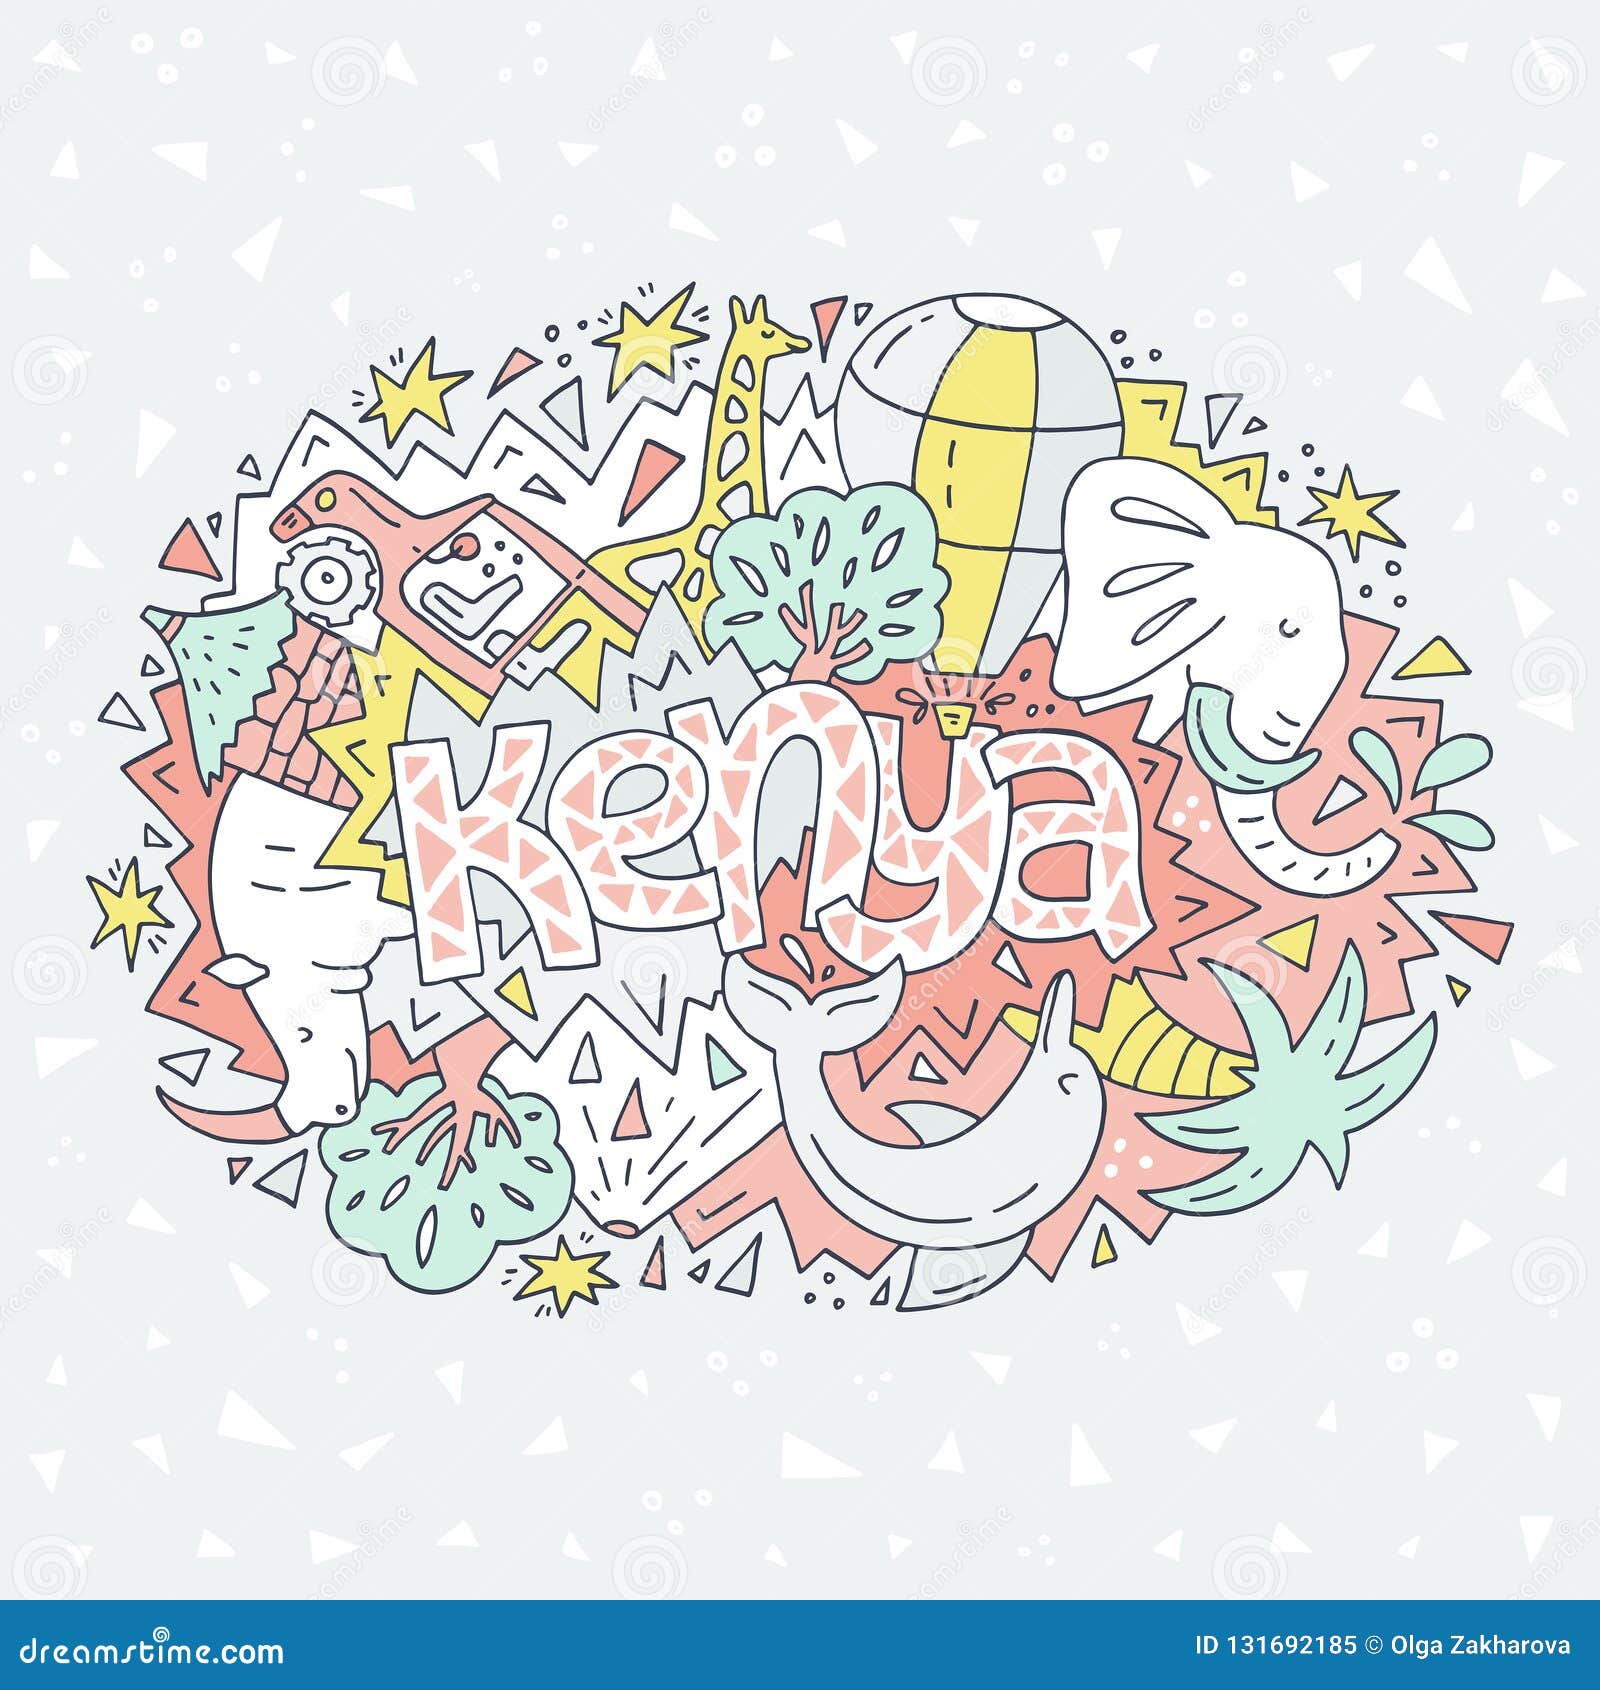 Kenya symbols illustration stock vector. Illustration of bright - 131692185